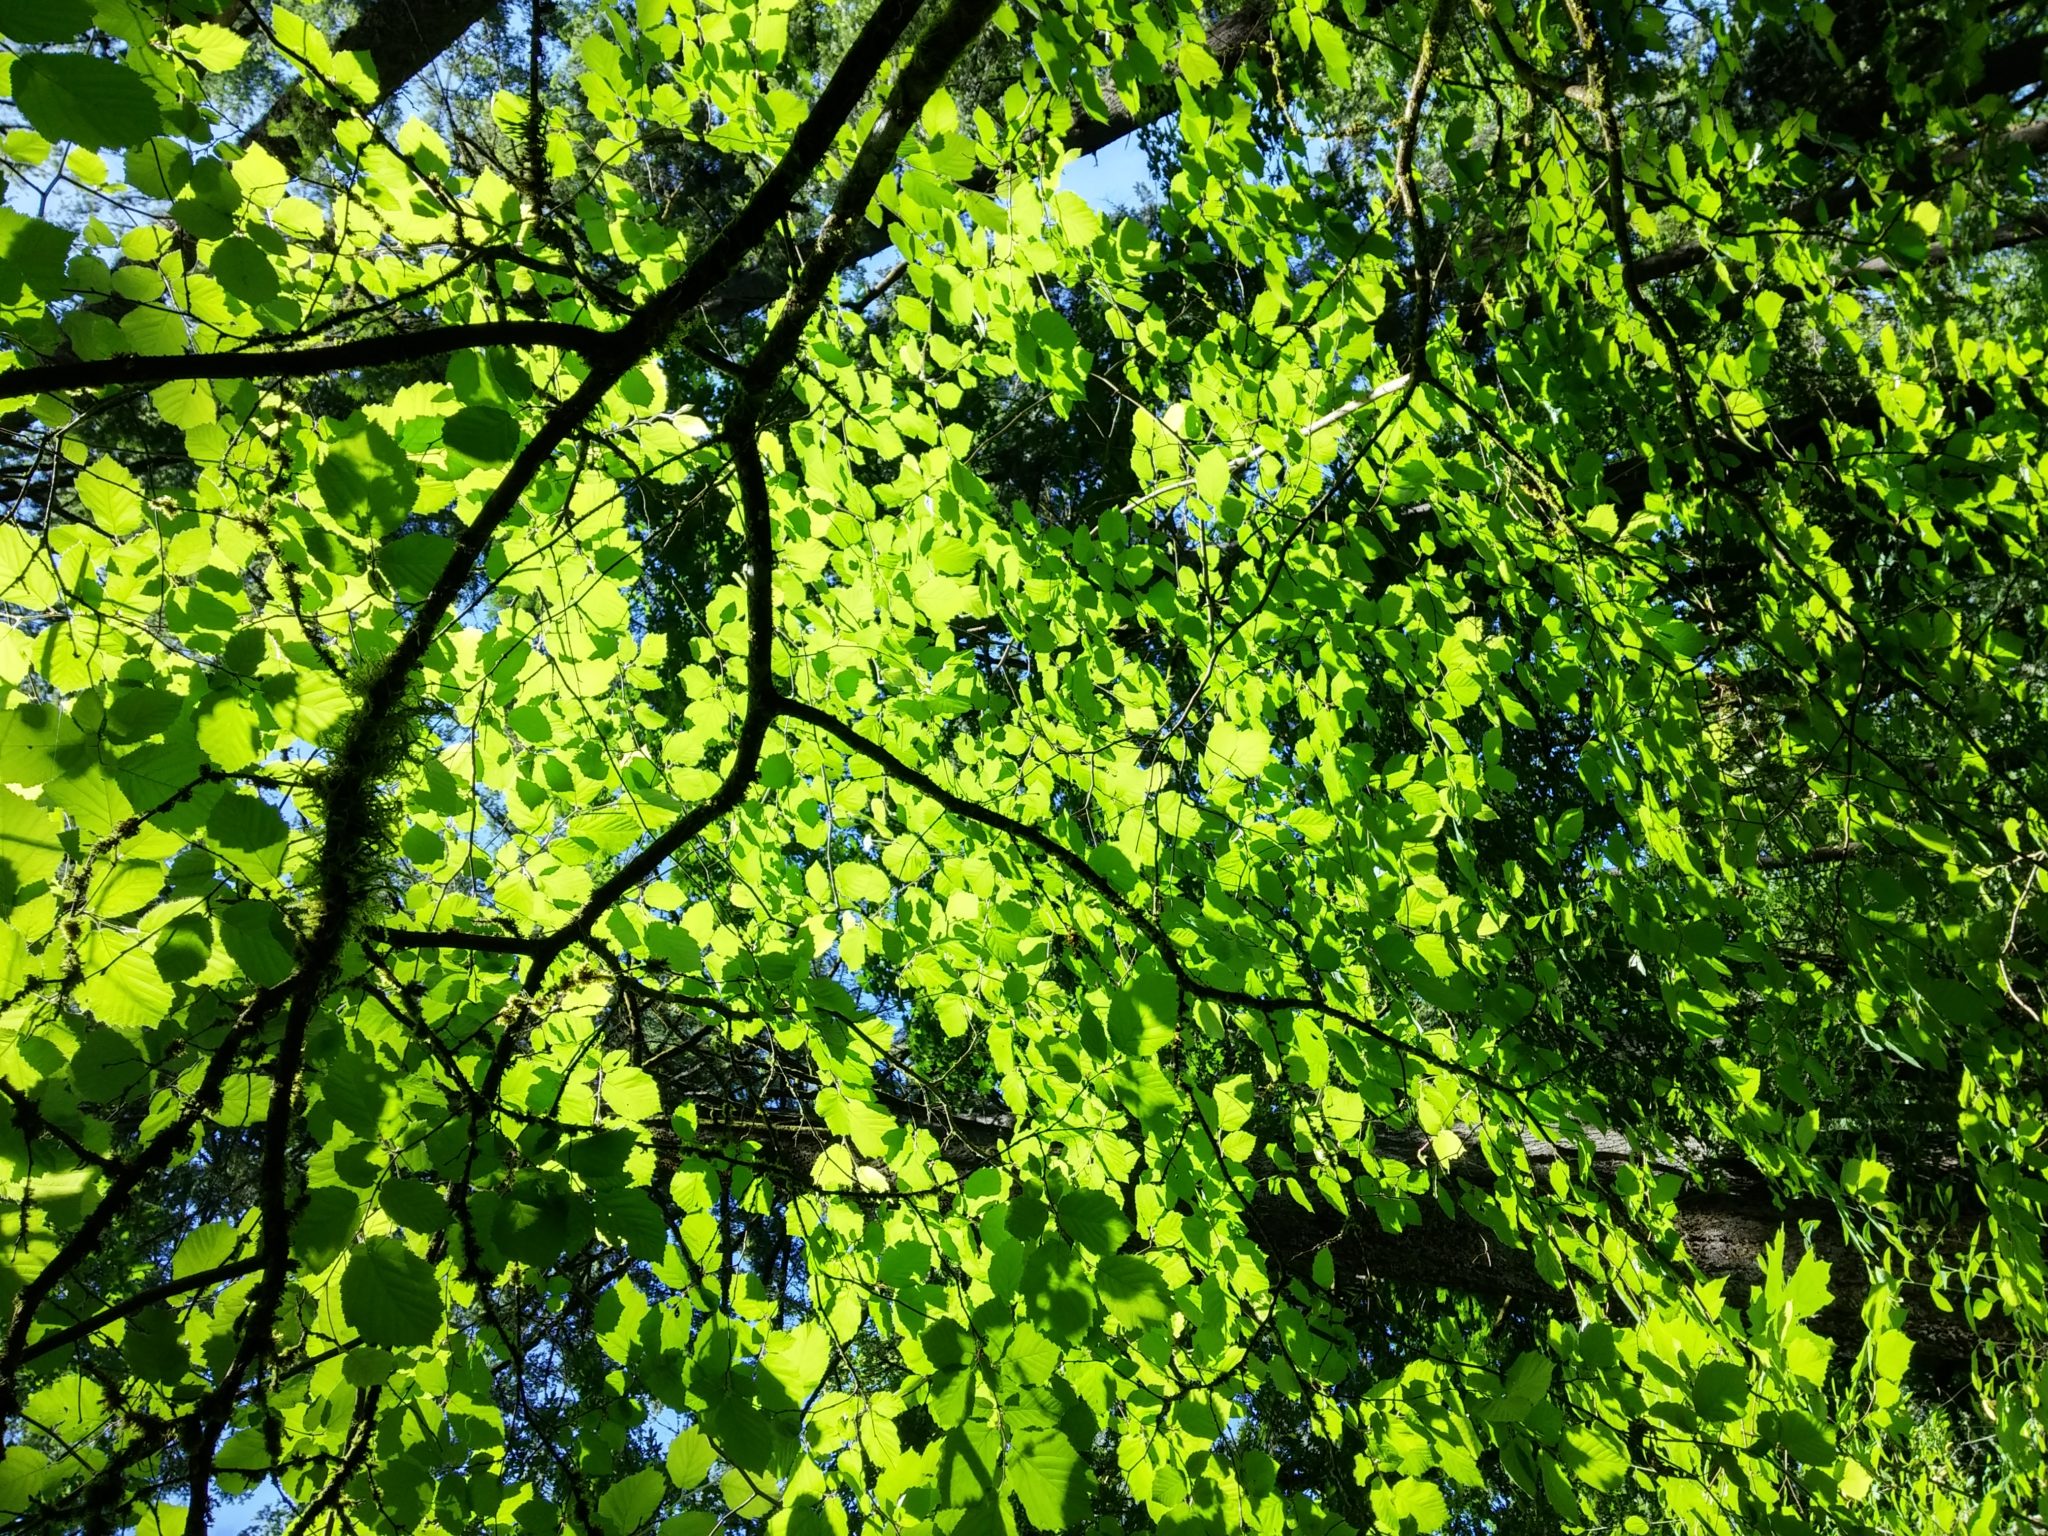 Canopy shade of tree